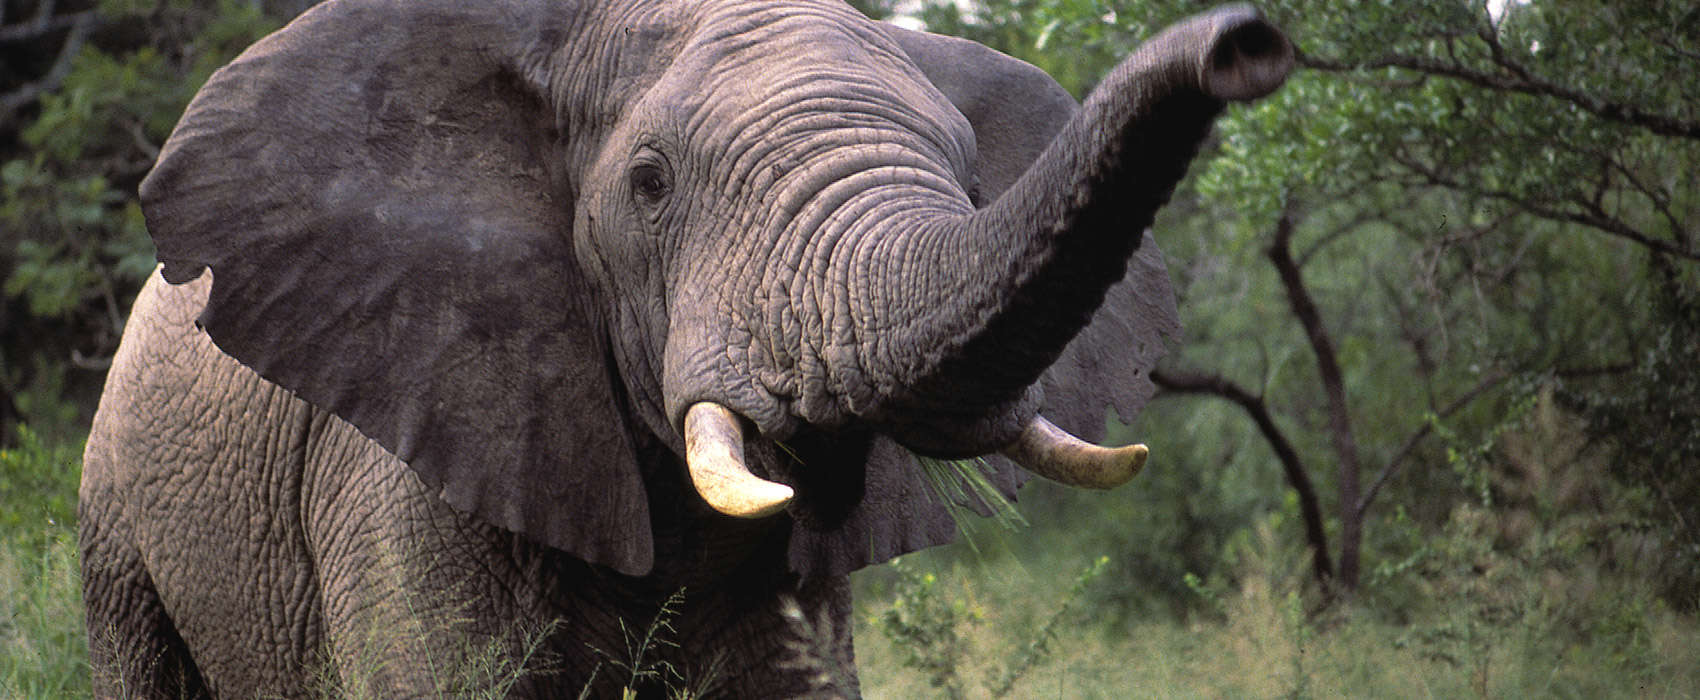 African Kruger National Park Safari elephant